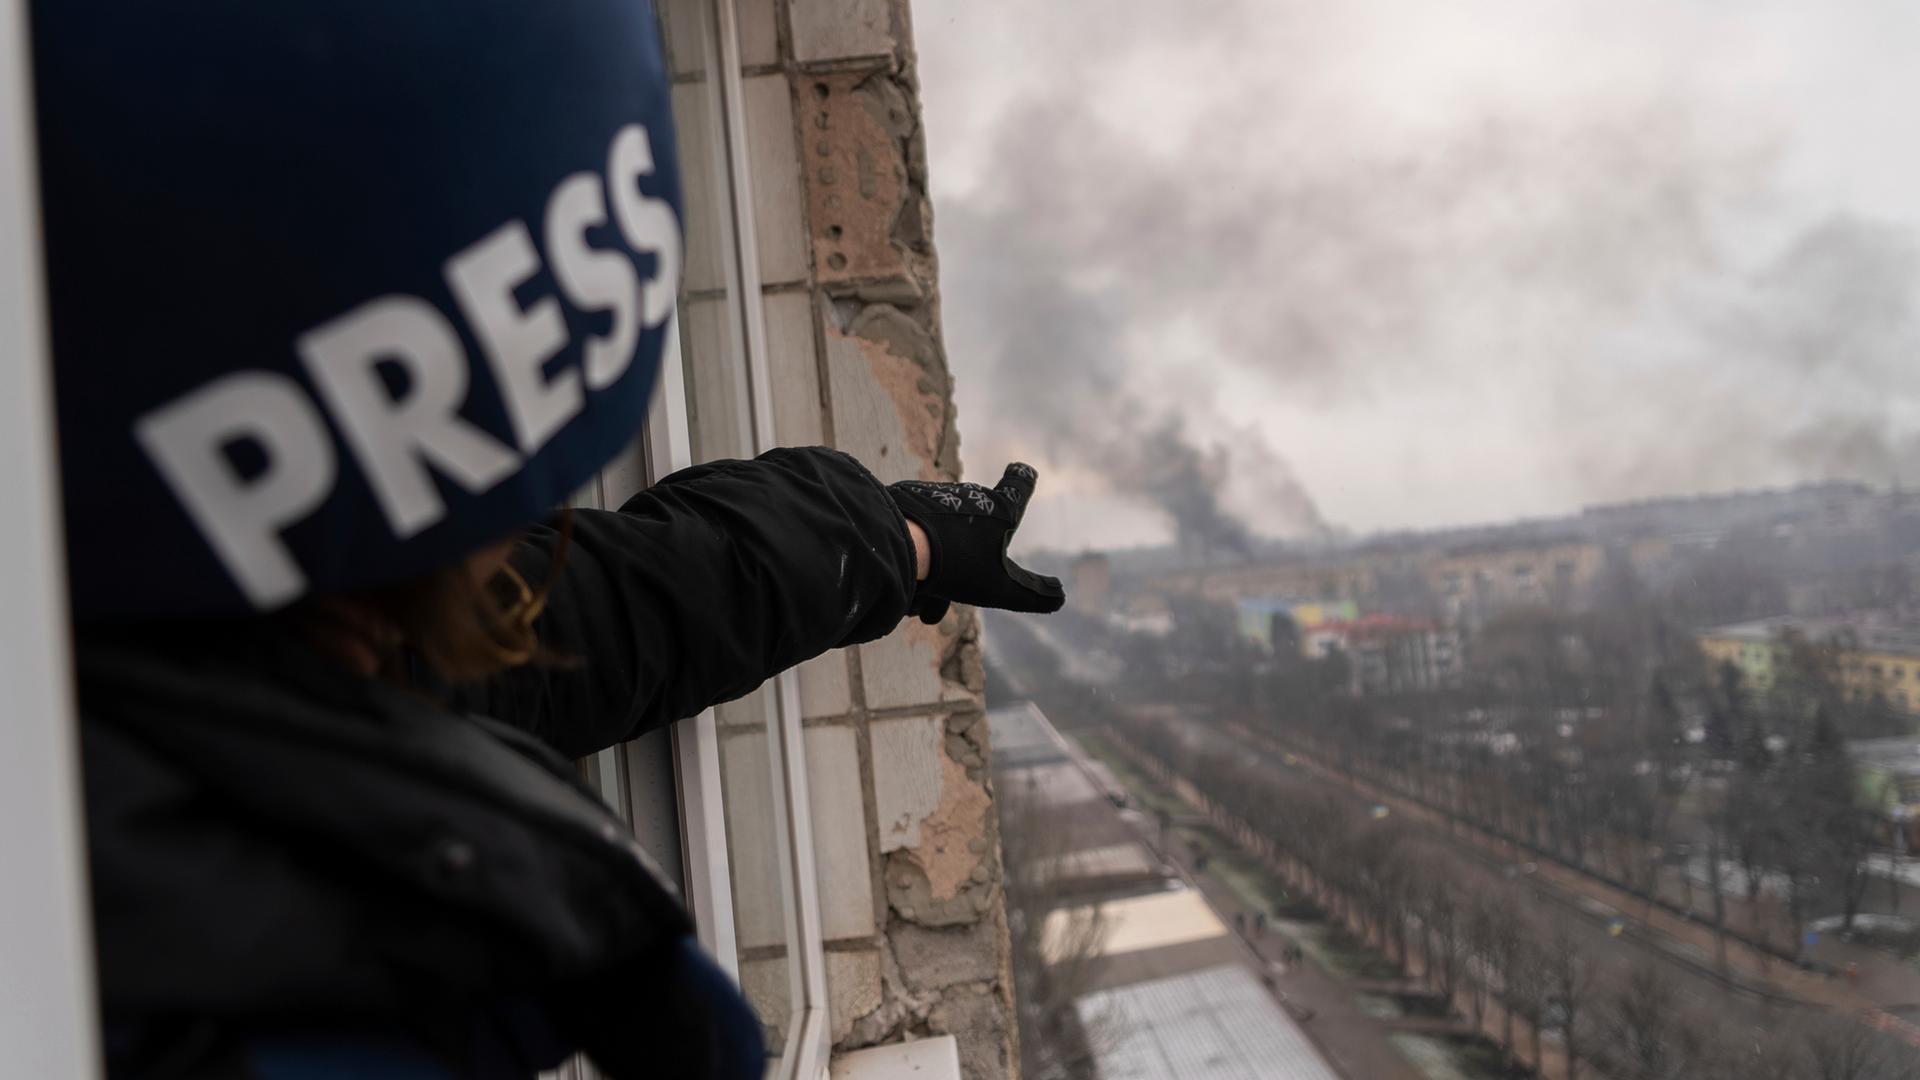 Der Pressefotograf der Agentur Associated Press, Evgeniy Maloletka, deutet auf ein brennendes Entbindungskrankenhaus in Mariupol